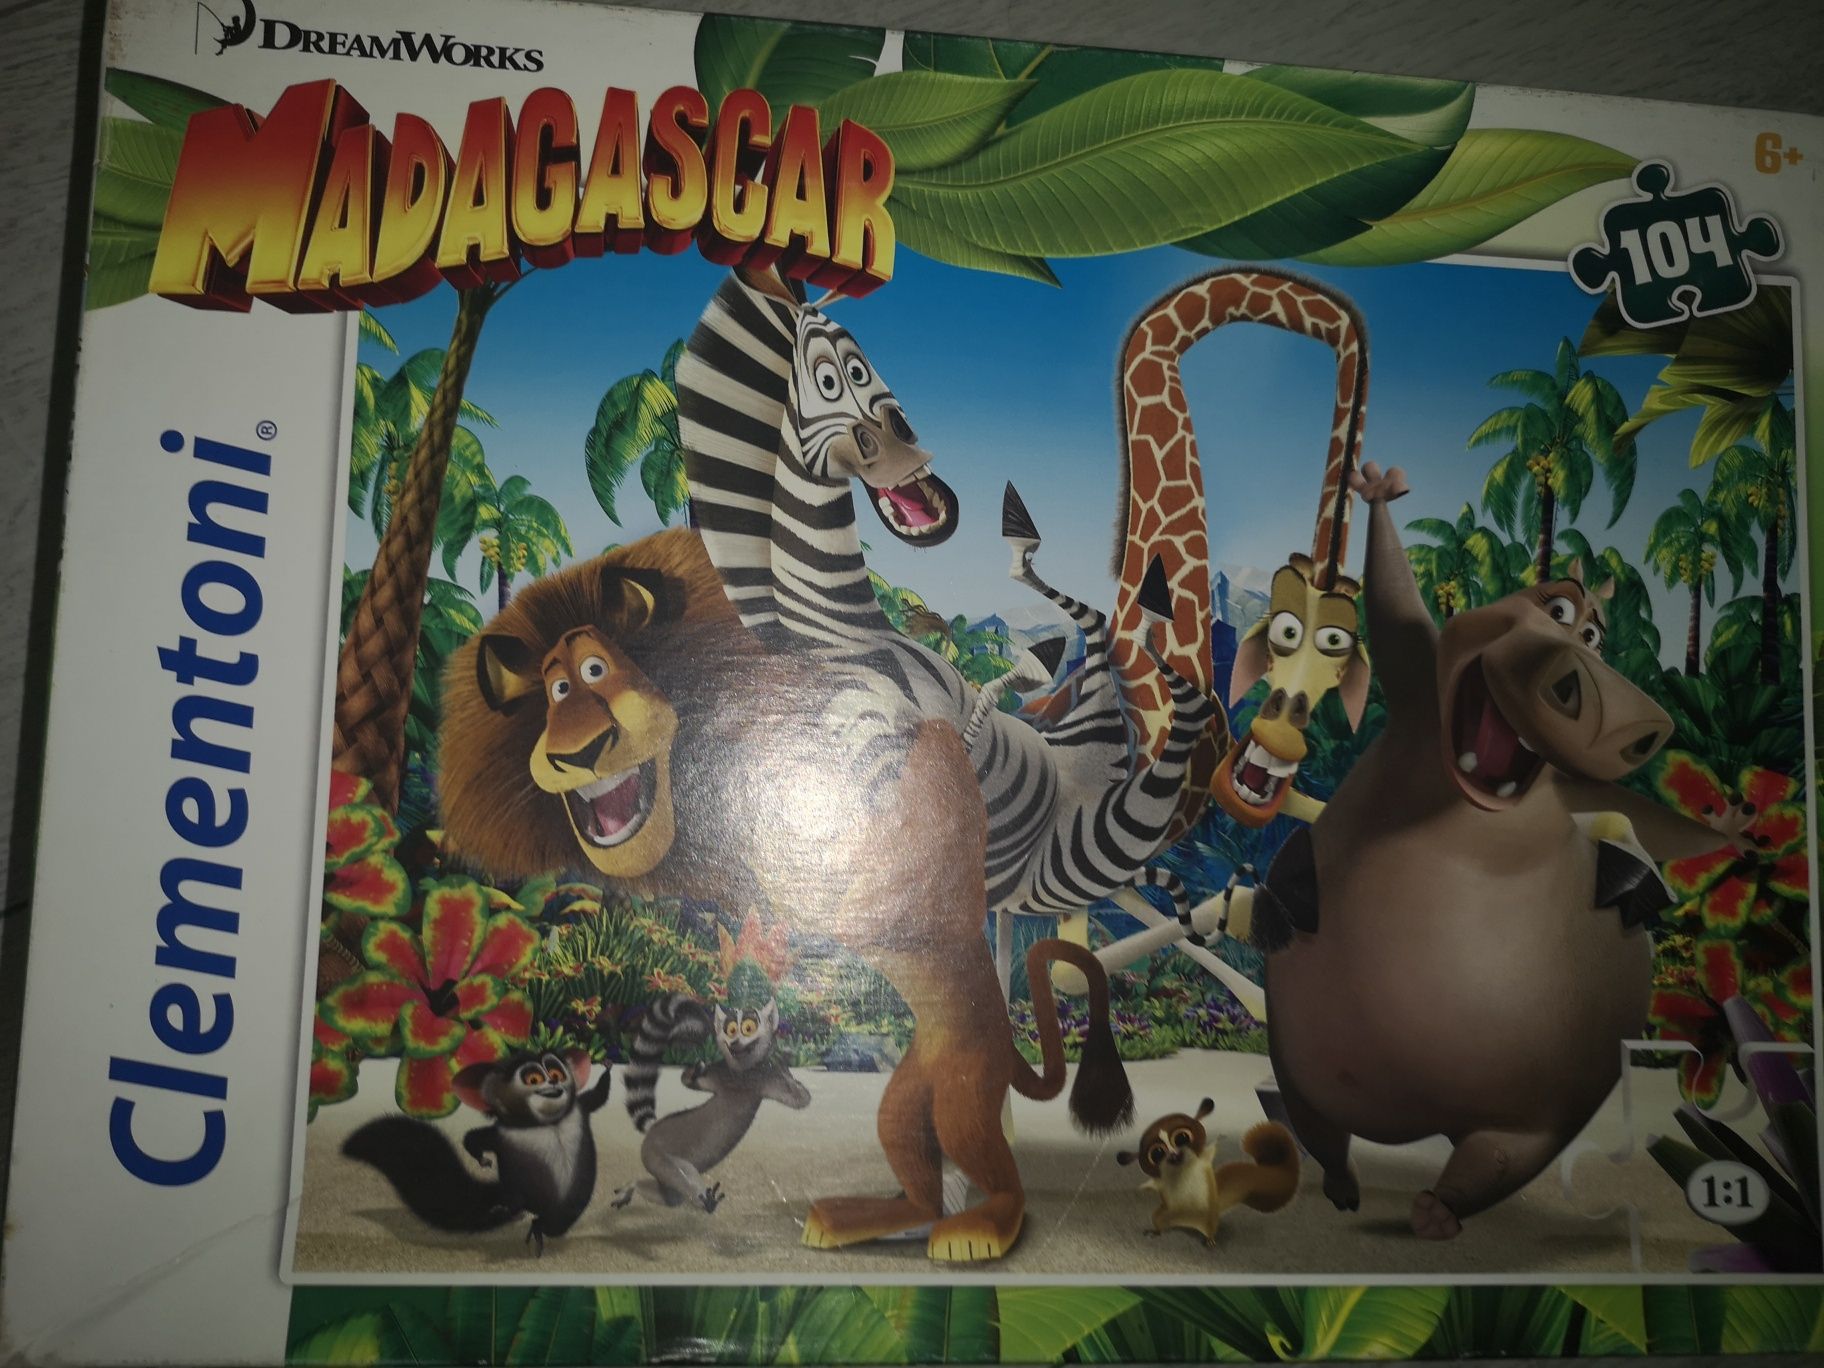 Puzzle Disney Toy Story, Madagaskar, Avengers